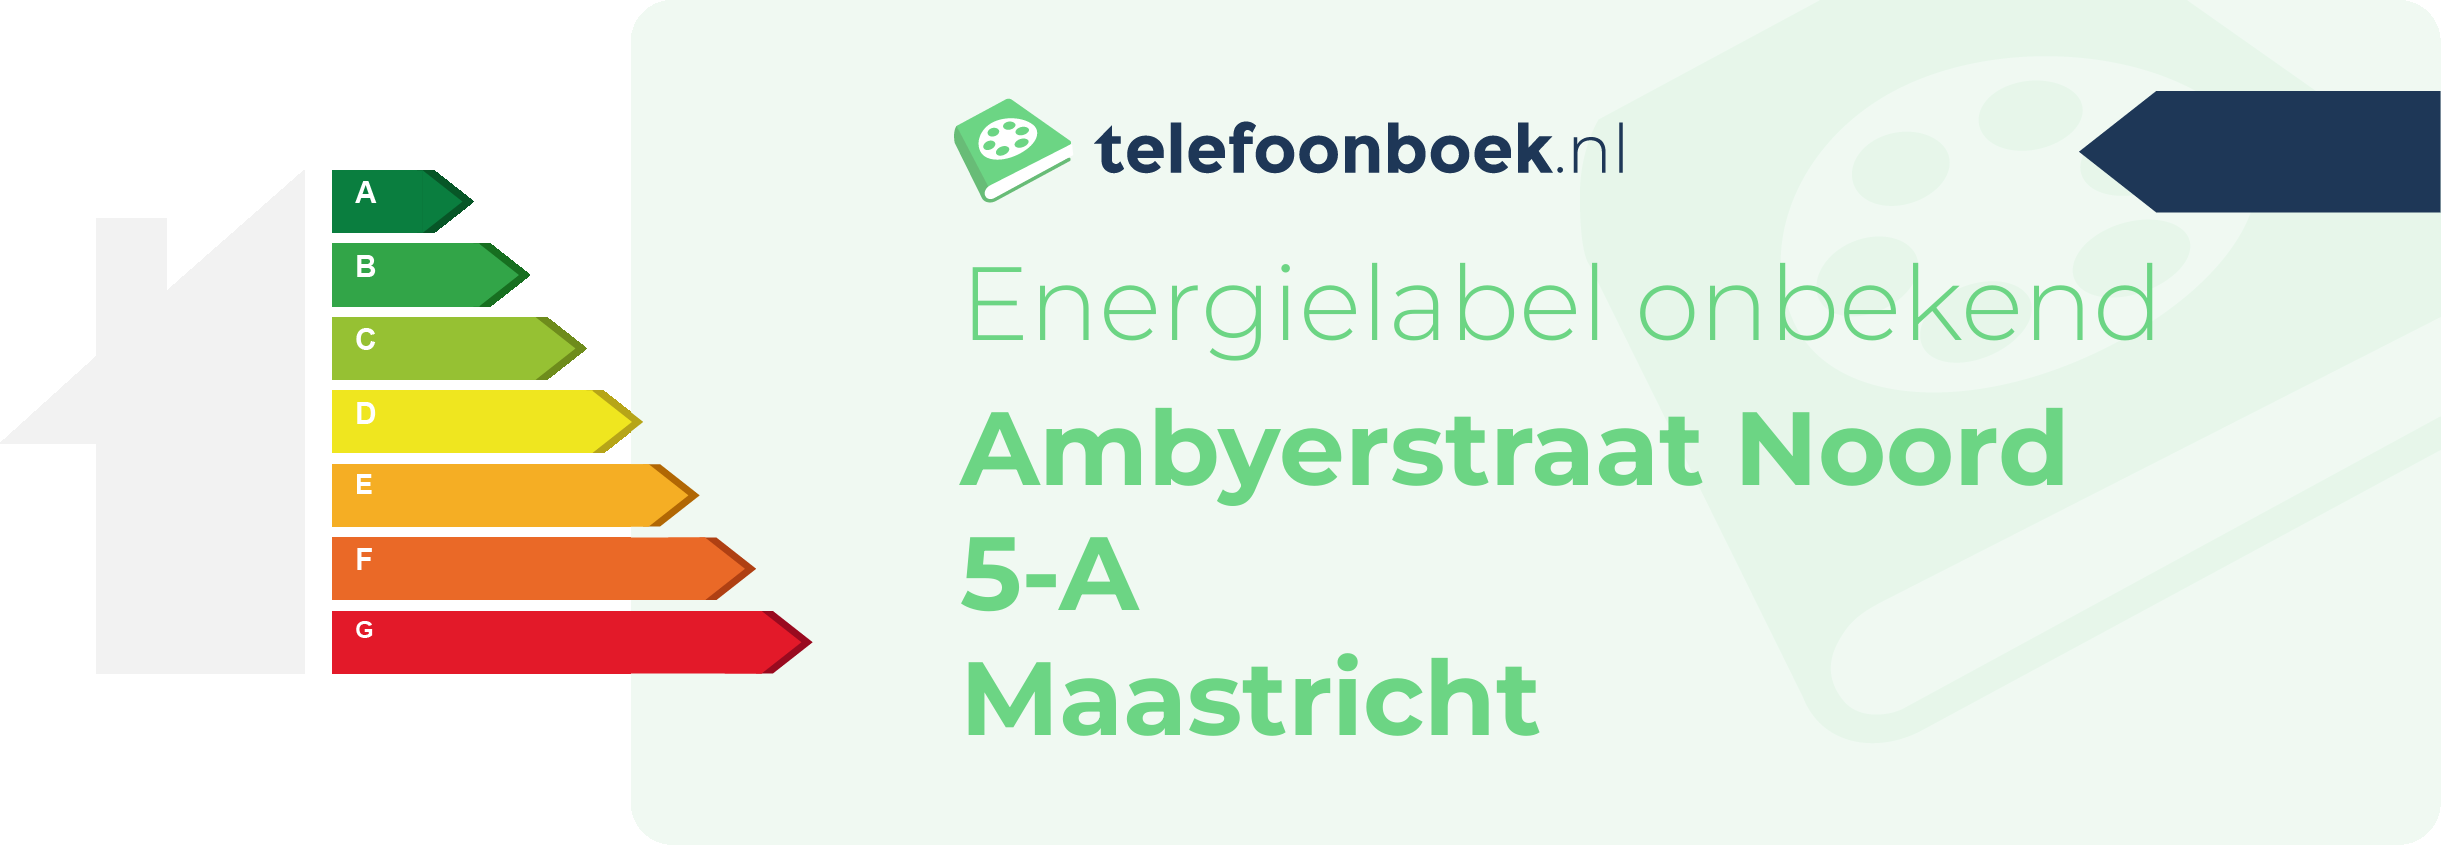 Energielabel Ambyerstraat Noord 5-A Maastricht